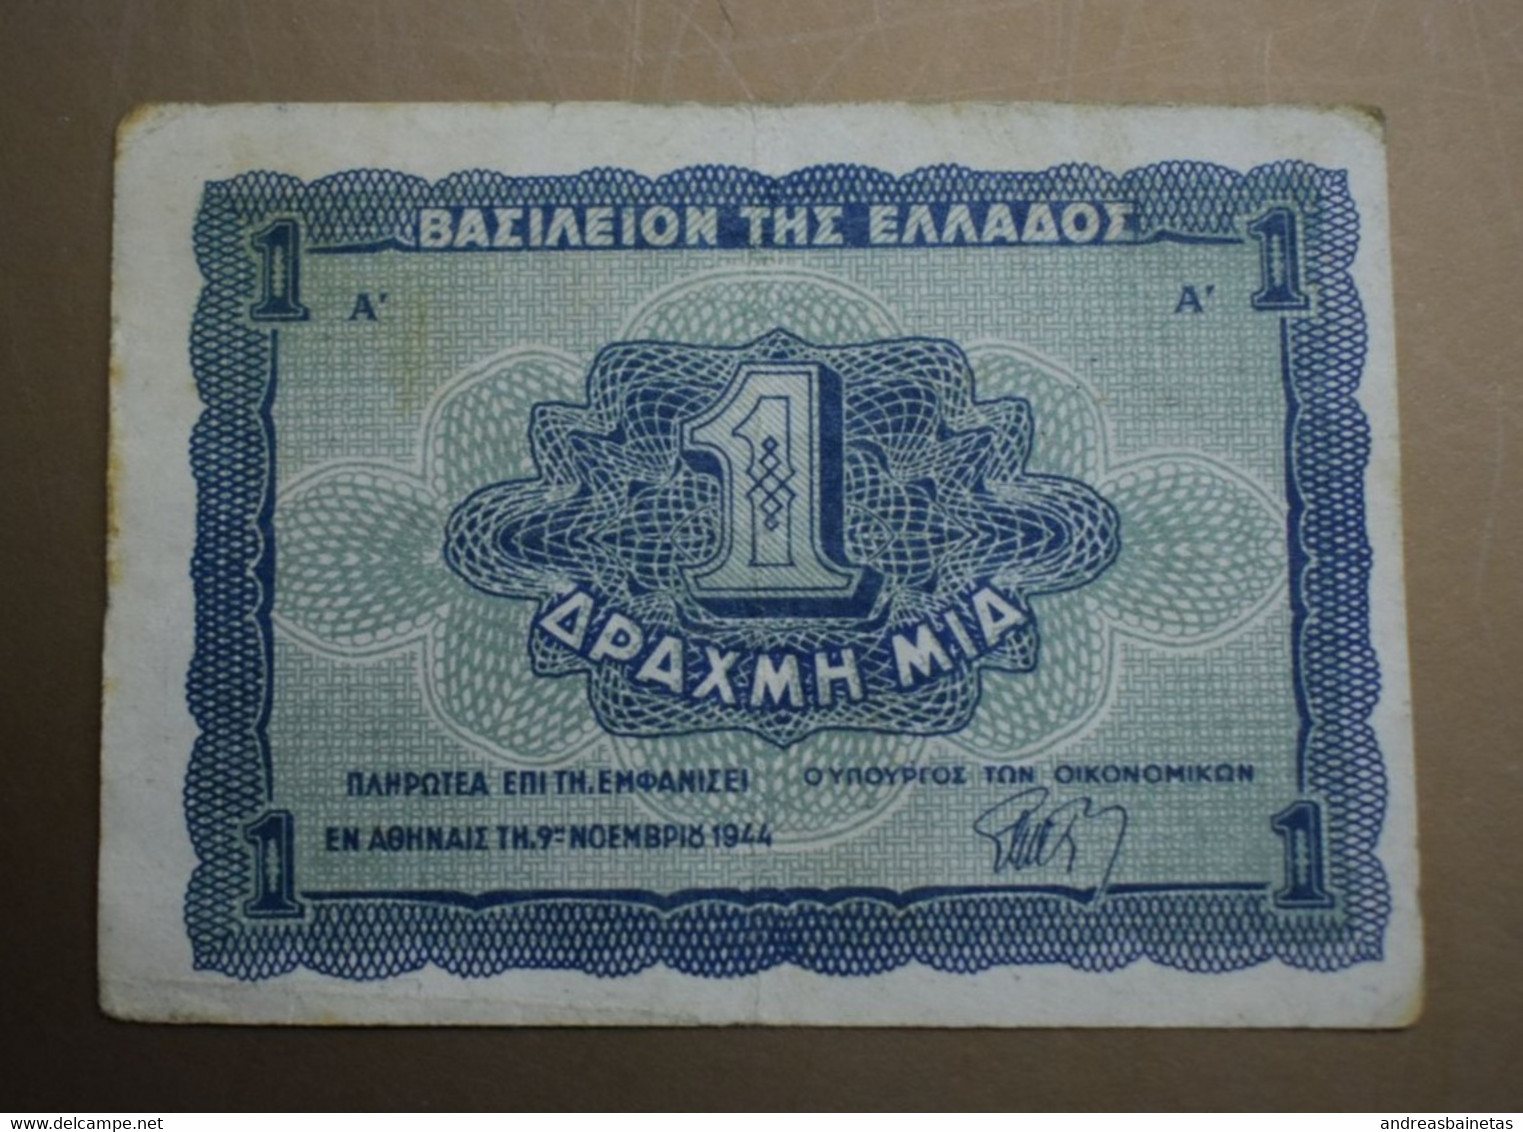 GREECE Banknotes 1 Drachma 1944 VF - Greece